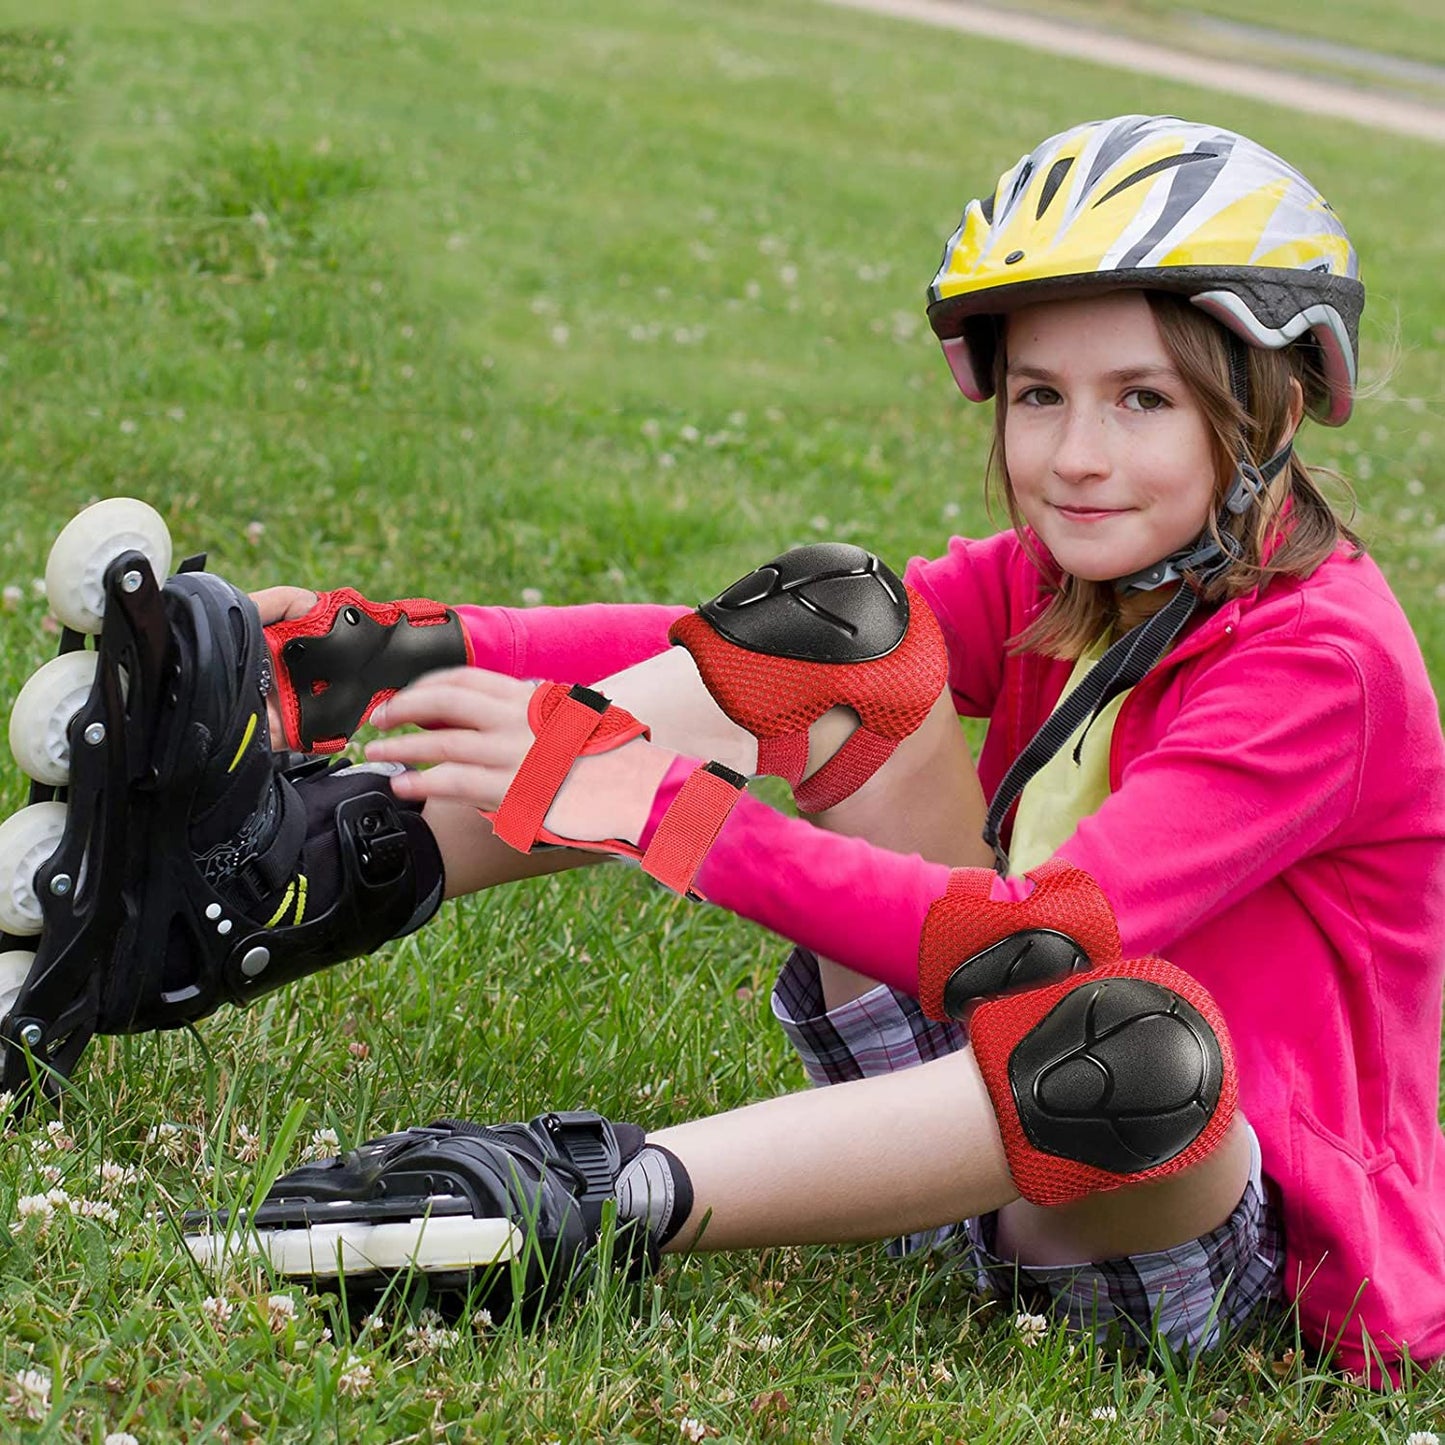 مجموعة حماية الركبة و الكوع و المعصم اثناء النشاطات الرياضية - لون ازرق - مقاس صغير للاطفال